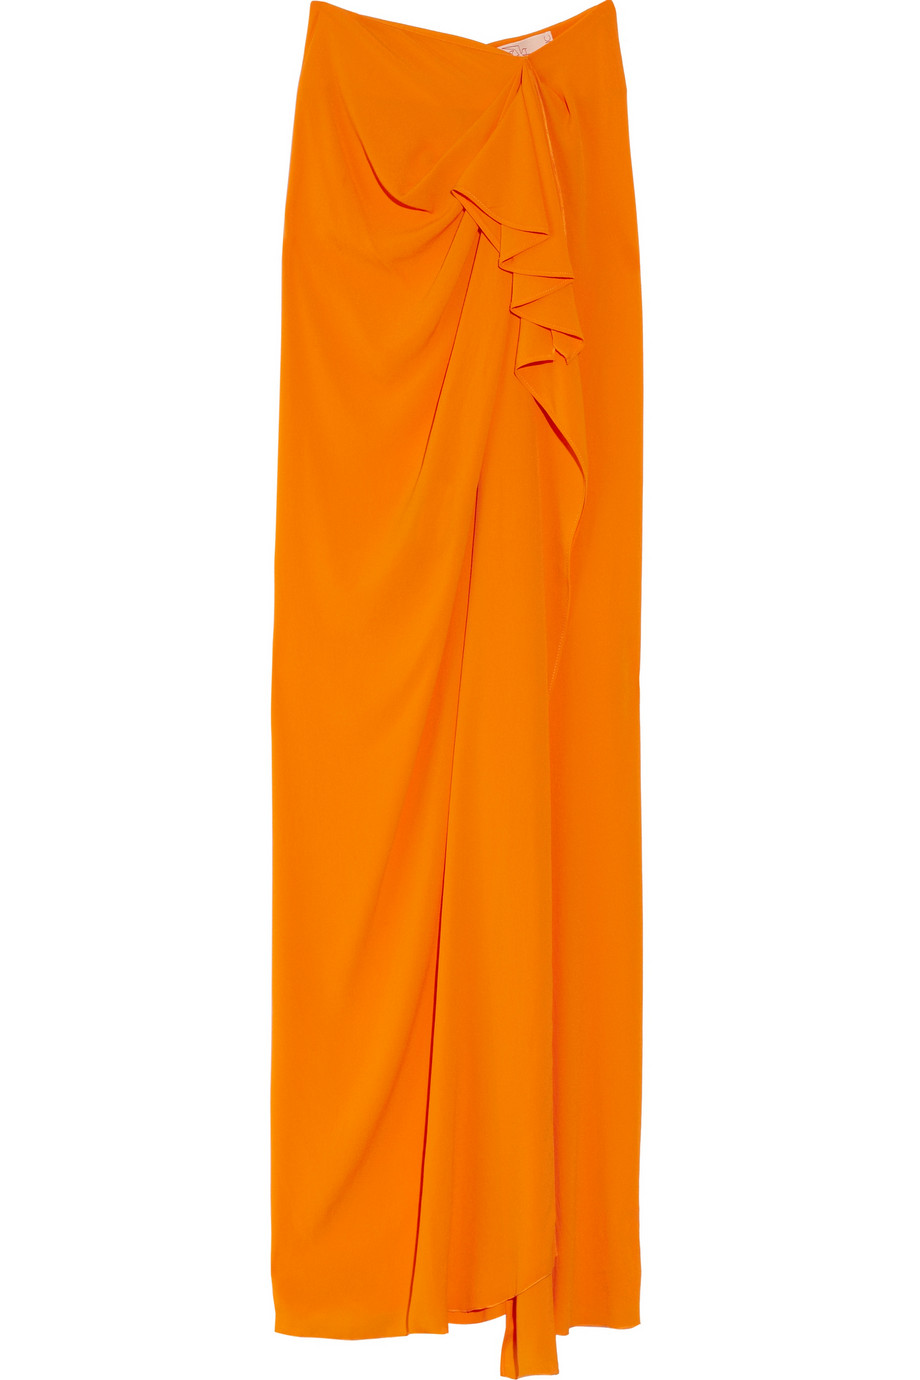 Lyst - Roksanda Draped Crepe Silk-blend Skirt in Orange